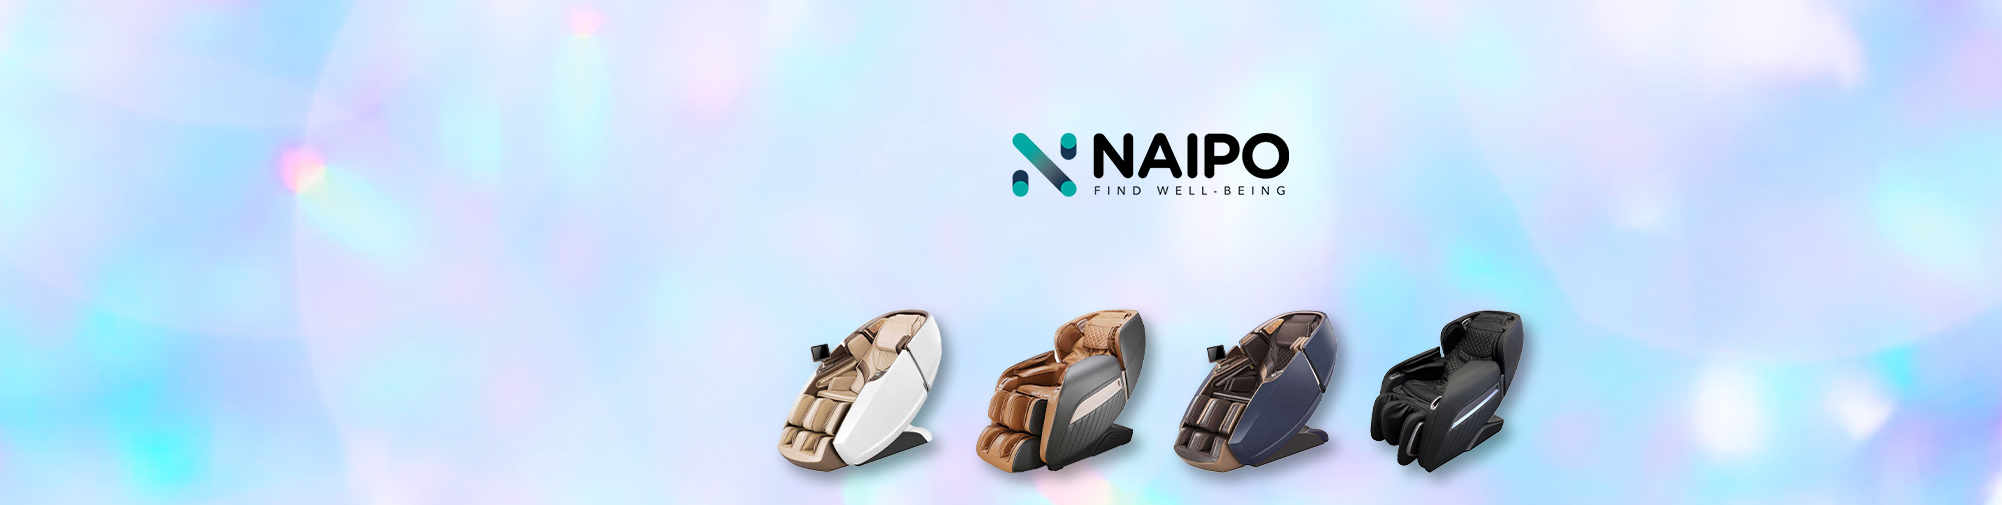 NAIPO - Productos de masaje para todo el mundo | El mundo del sillón de masaje